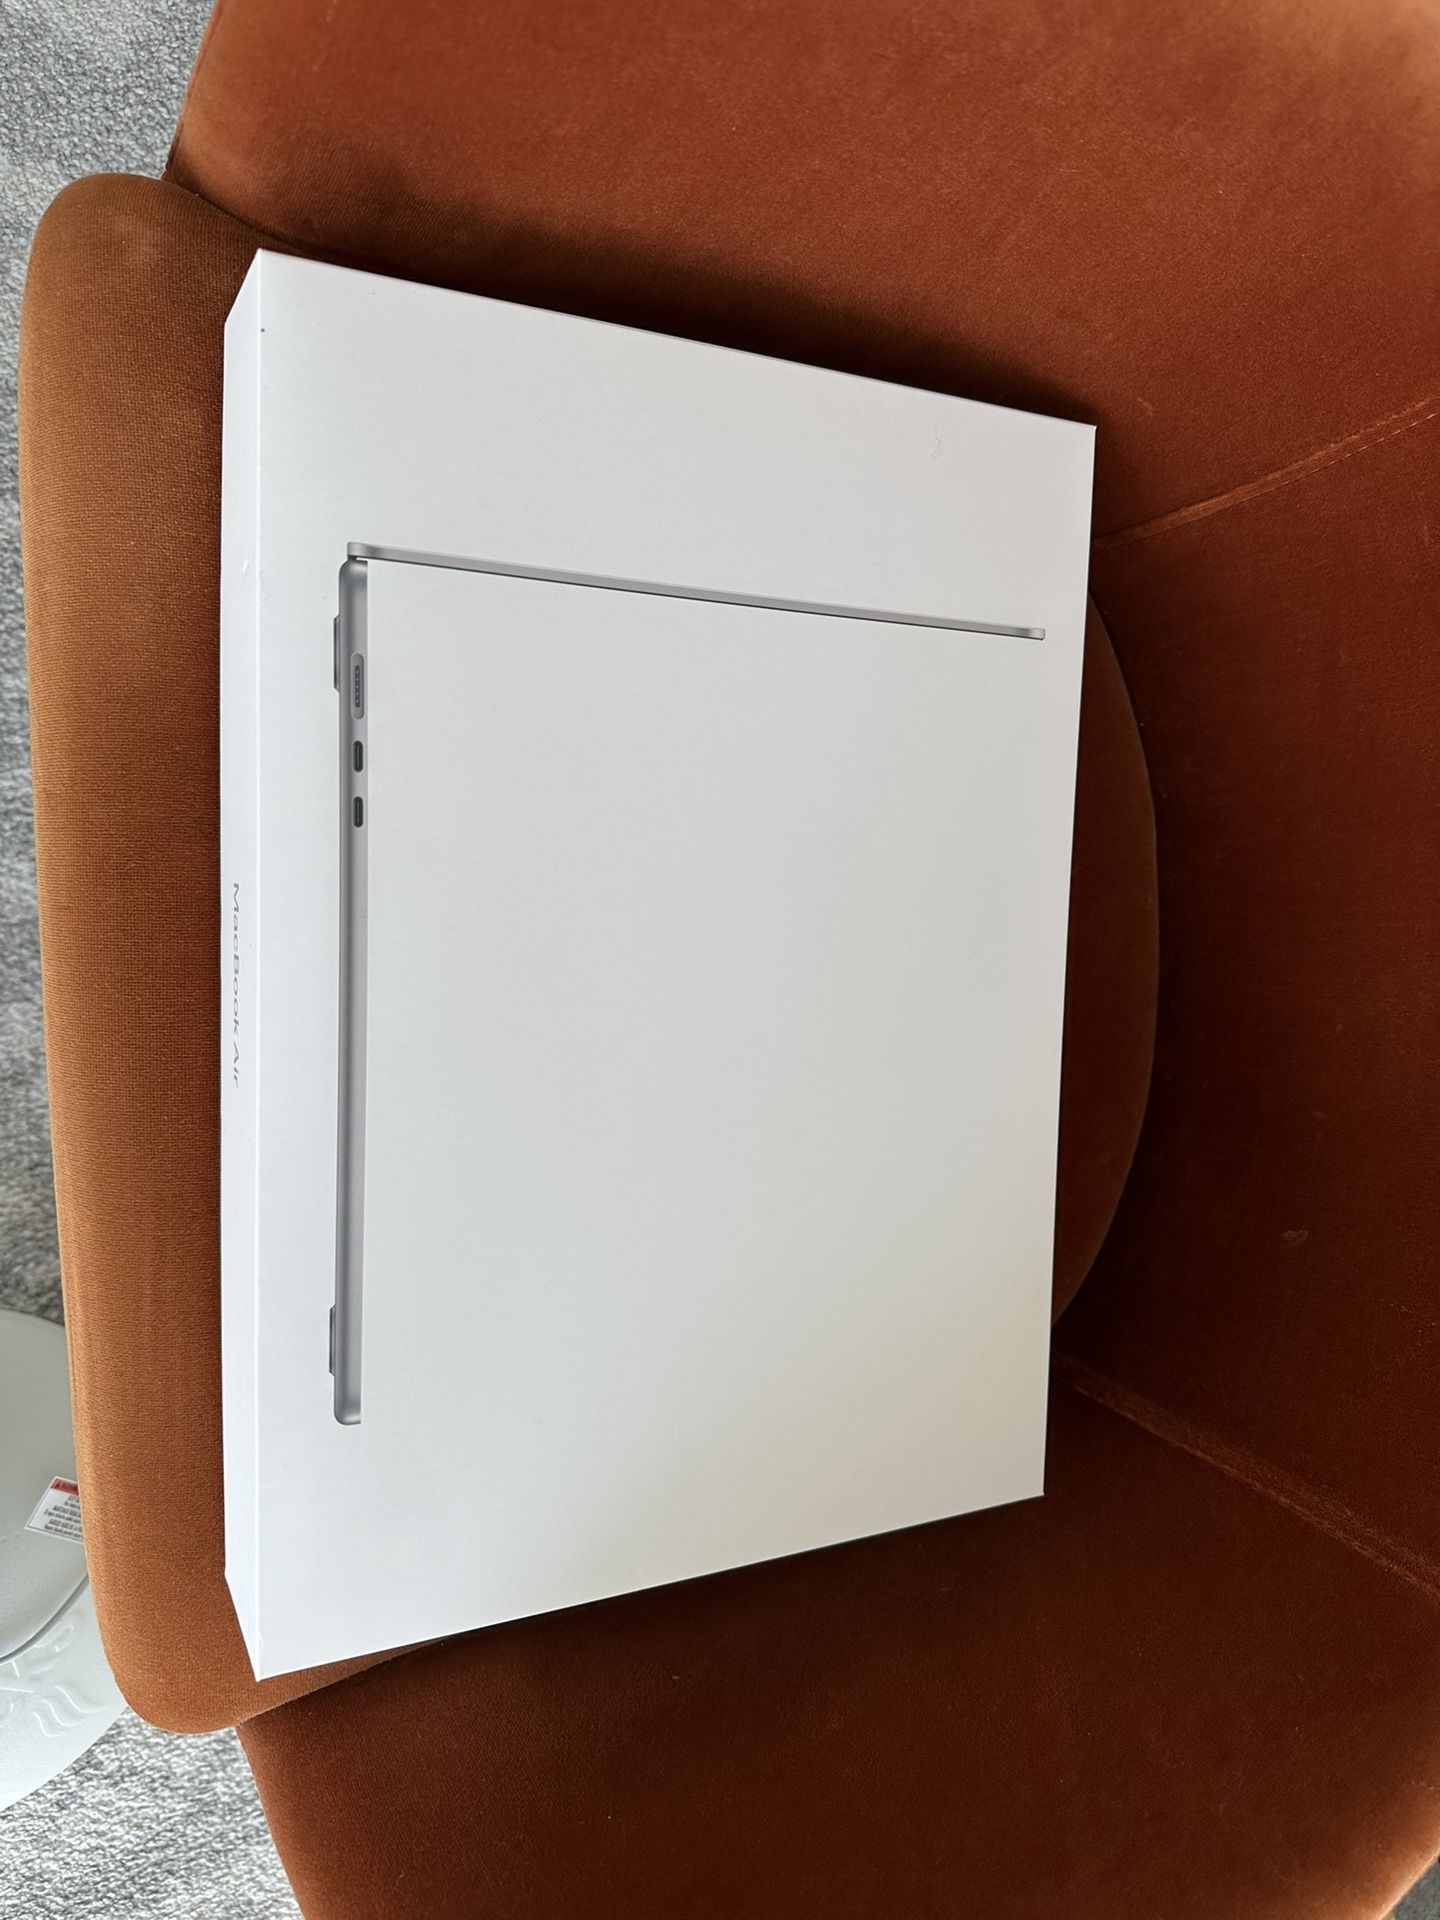 New In Box 15” M2 MacBook Air 16 Gb Ram 1tb Ssd 